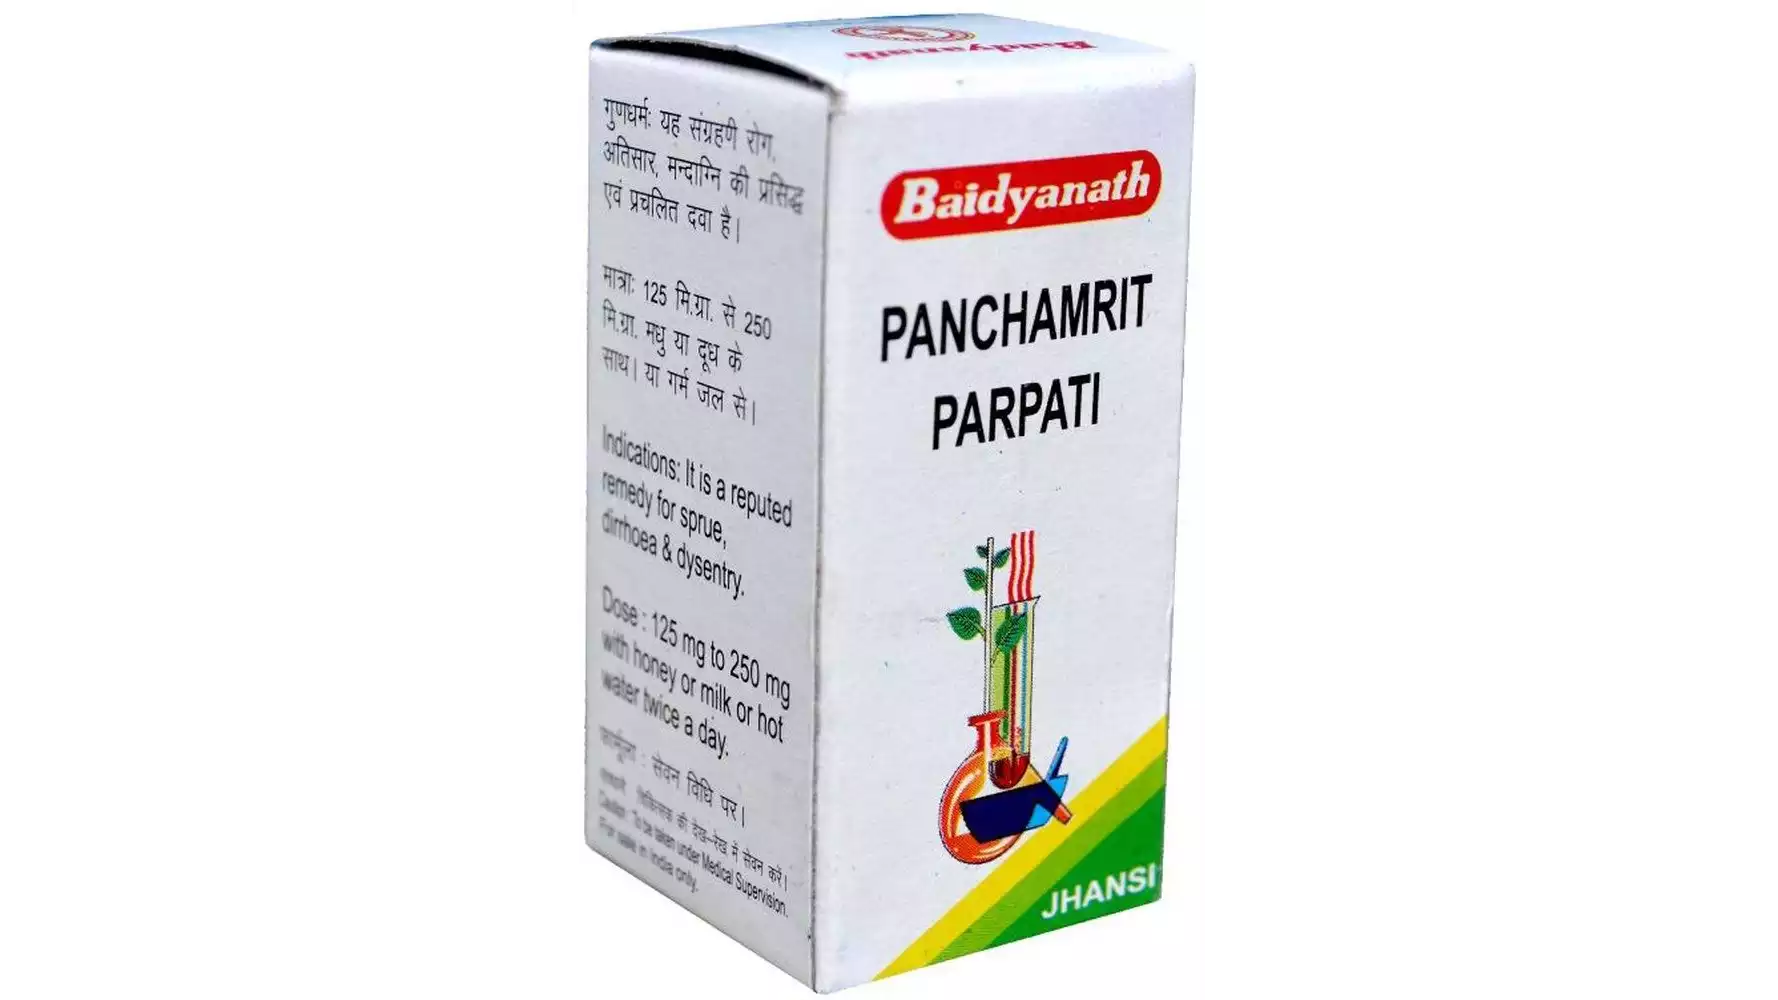 Baidyanath Panchamrit Parpati (5g)